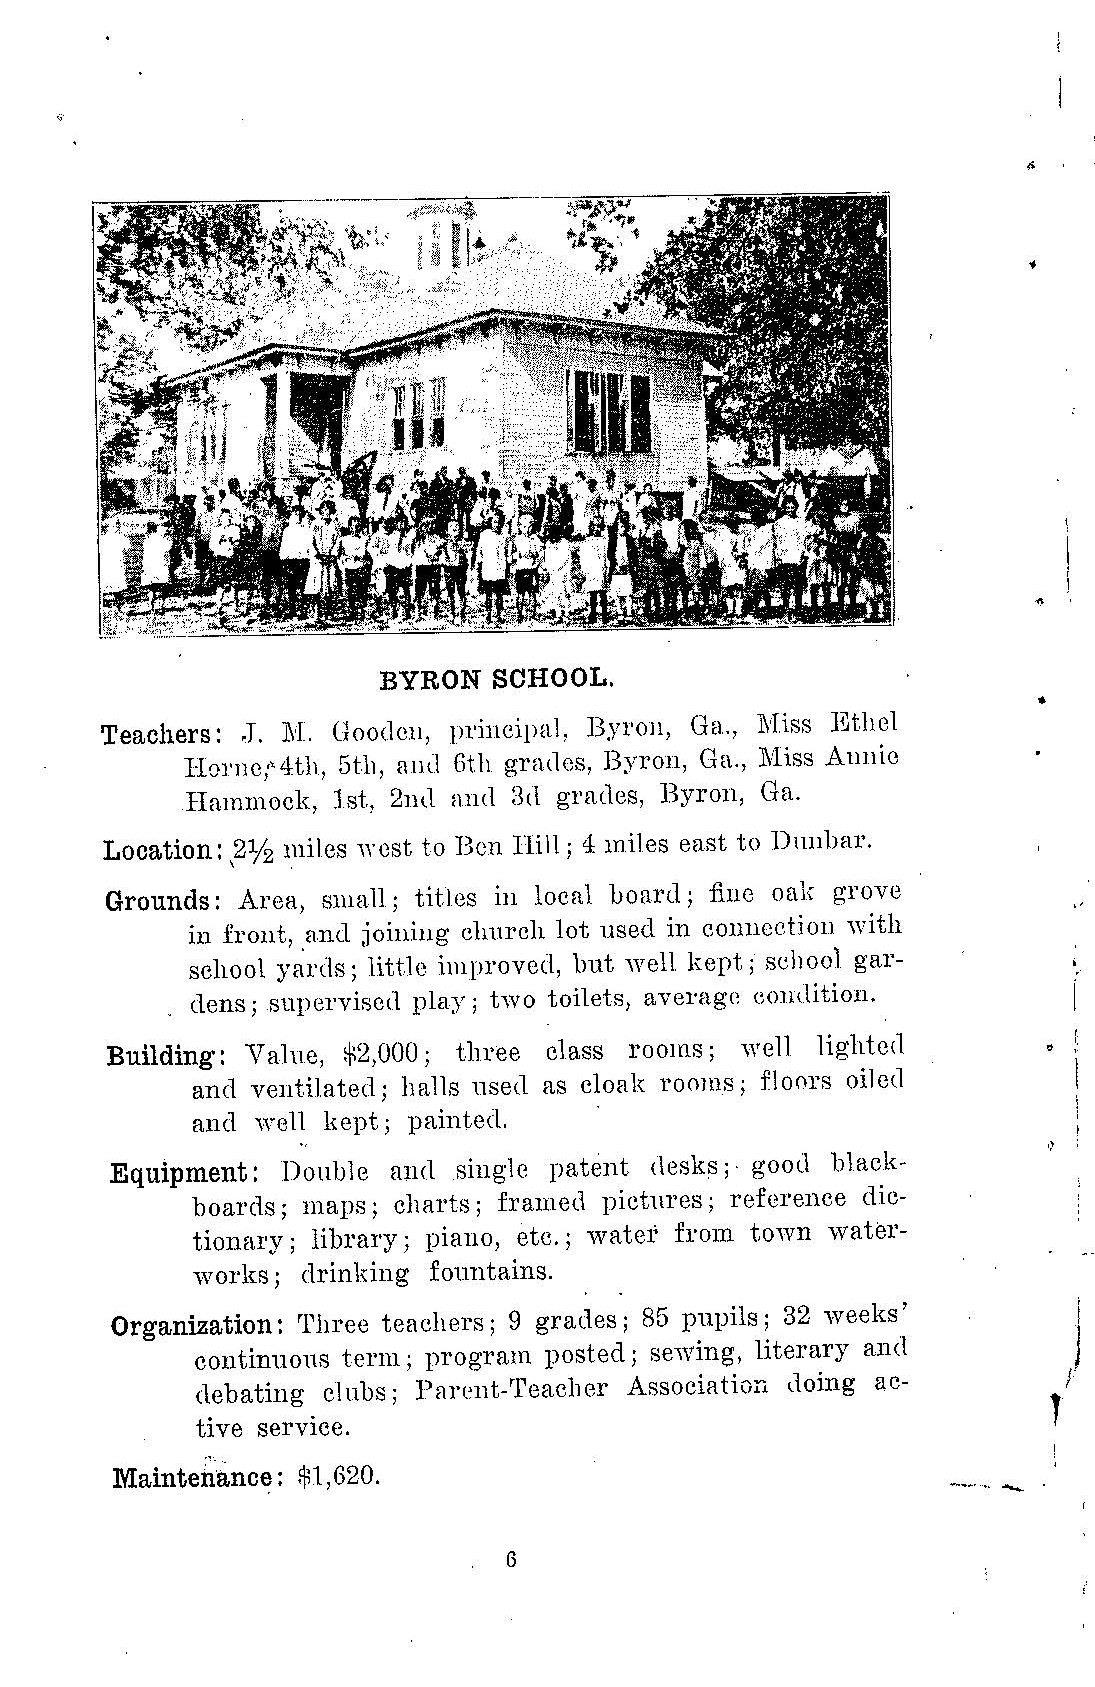 Byron School